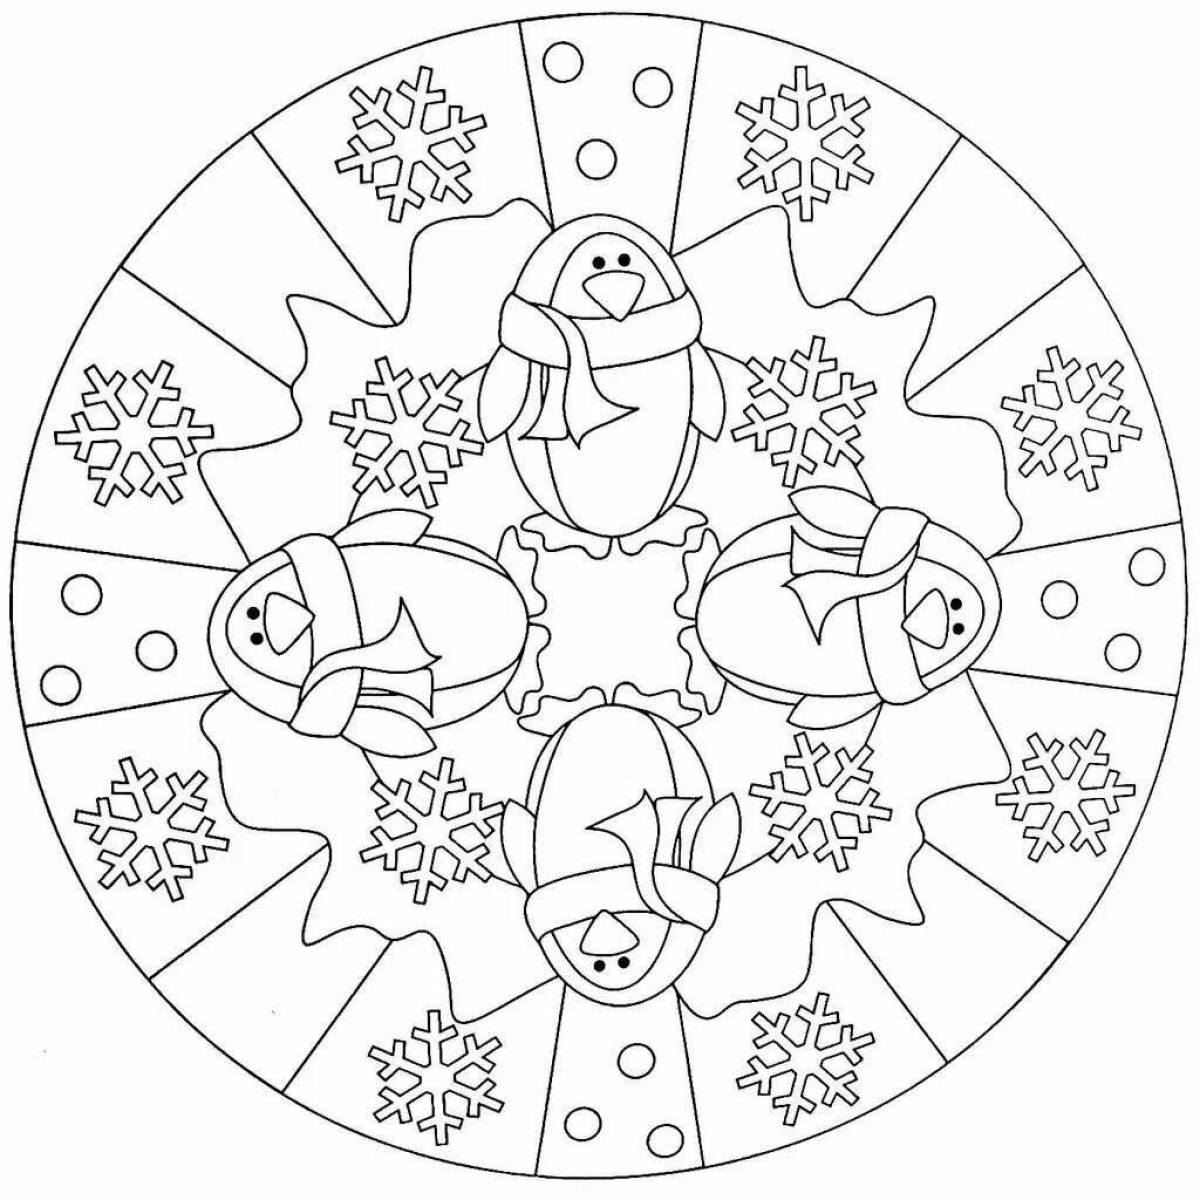 Winter mandalas for children #2